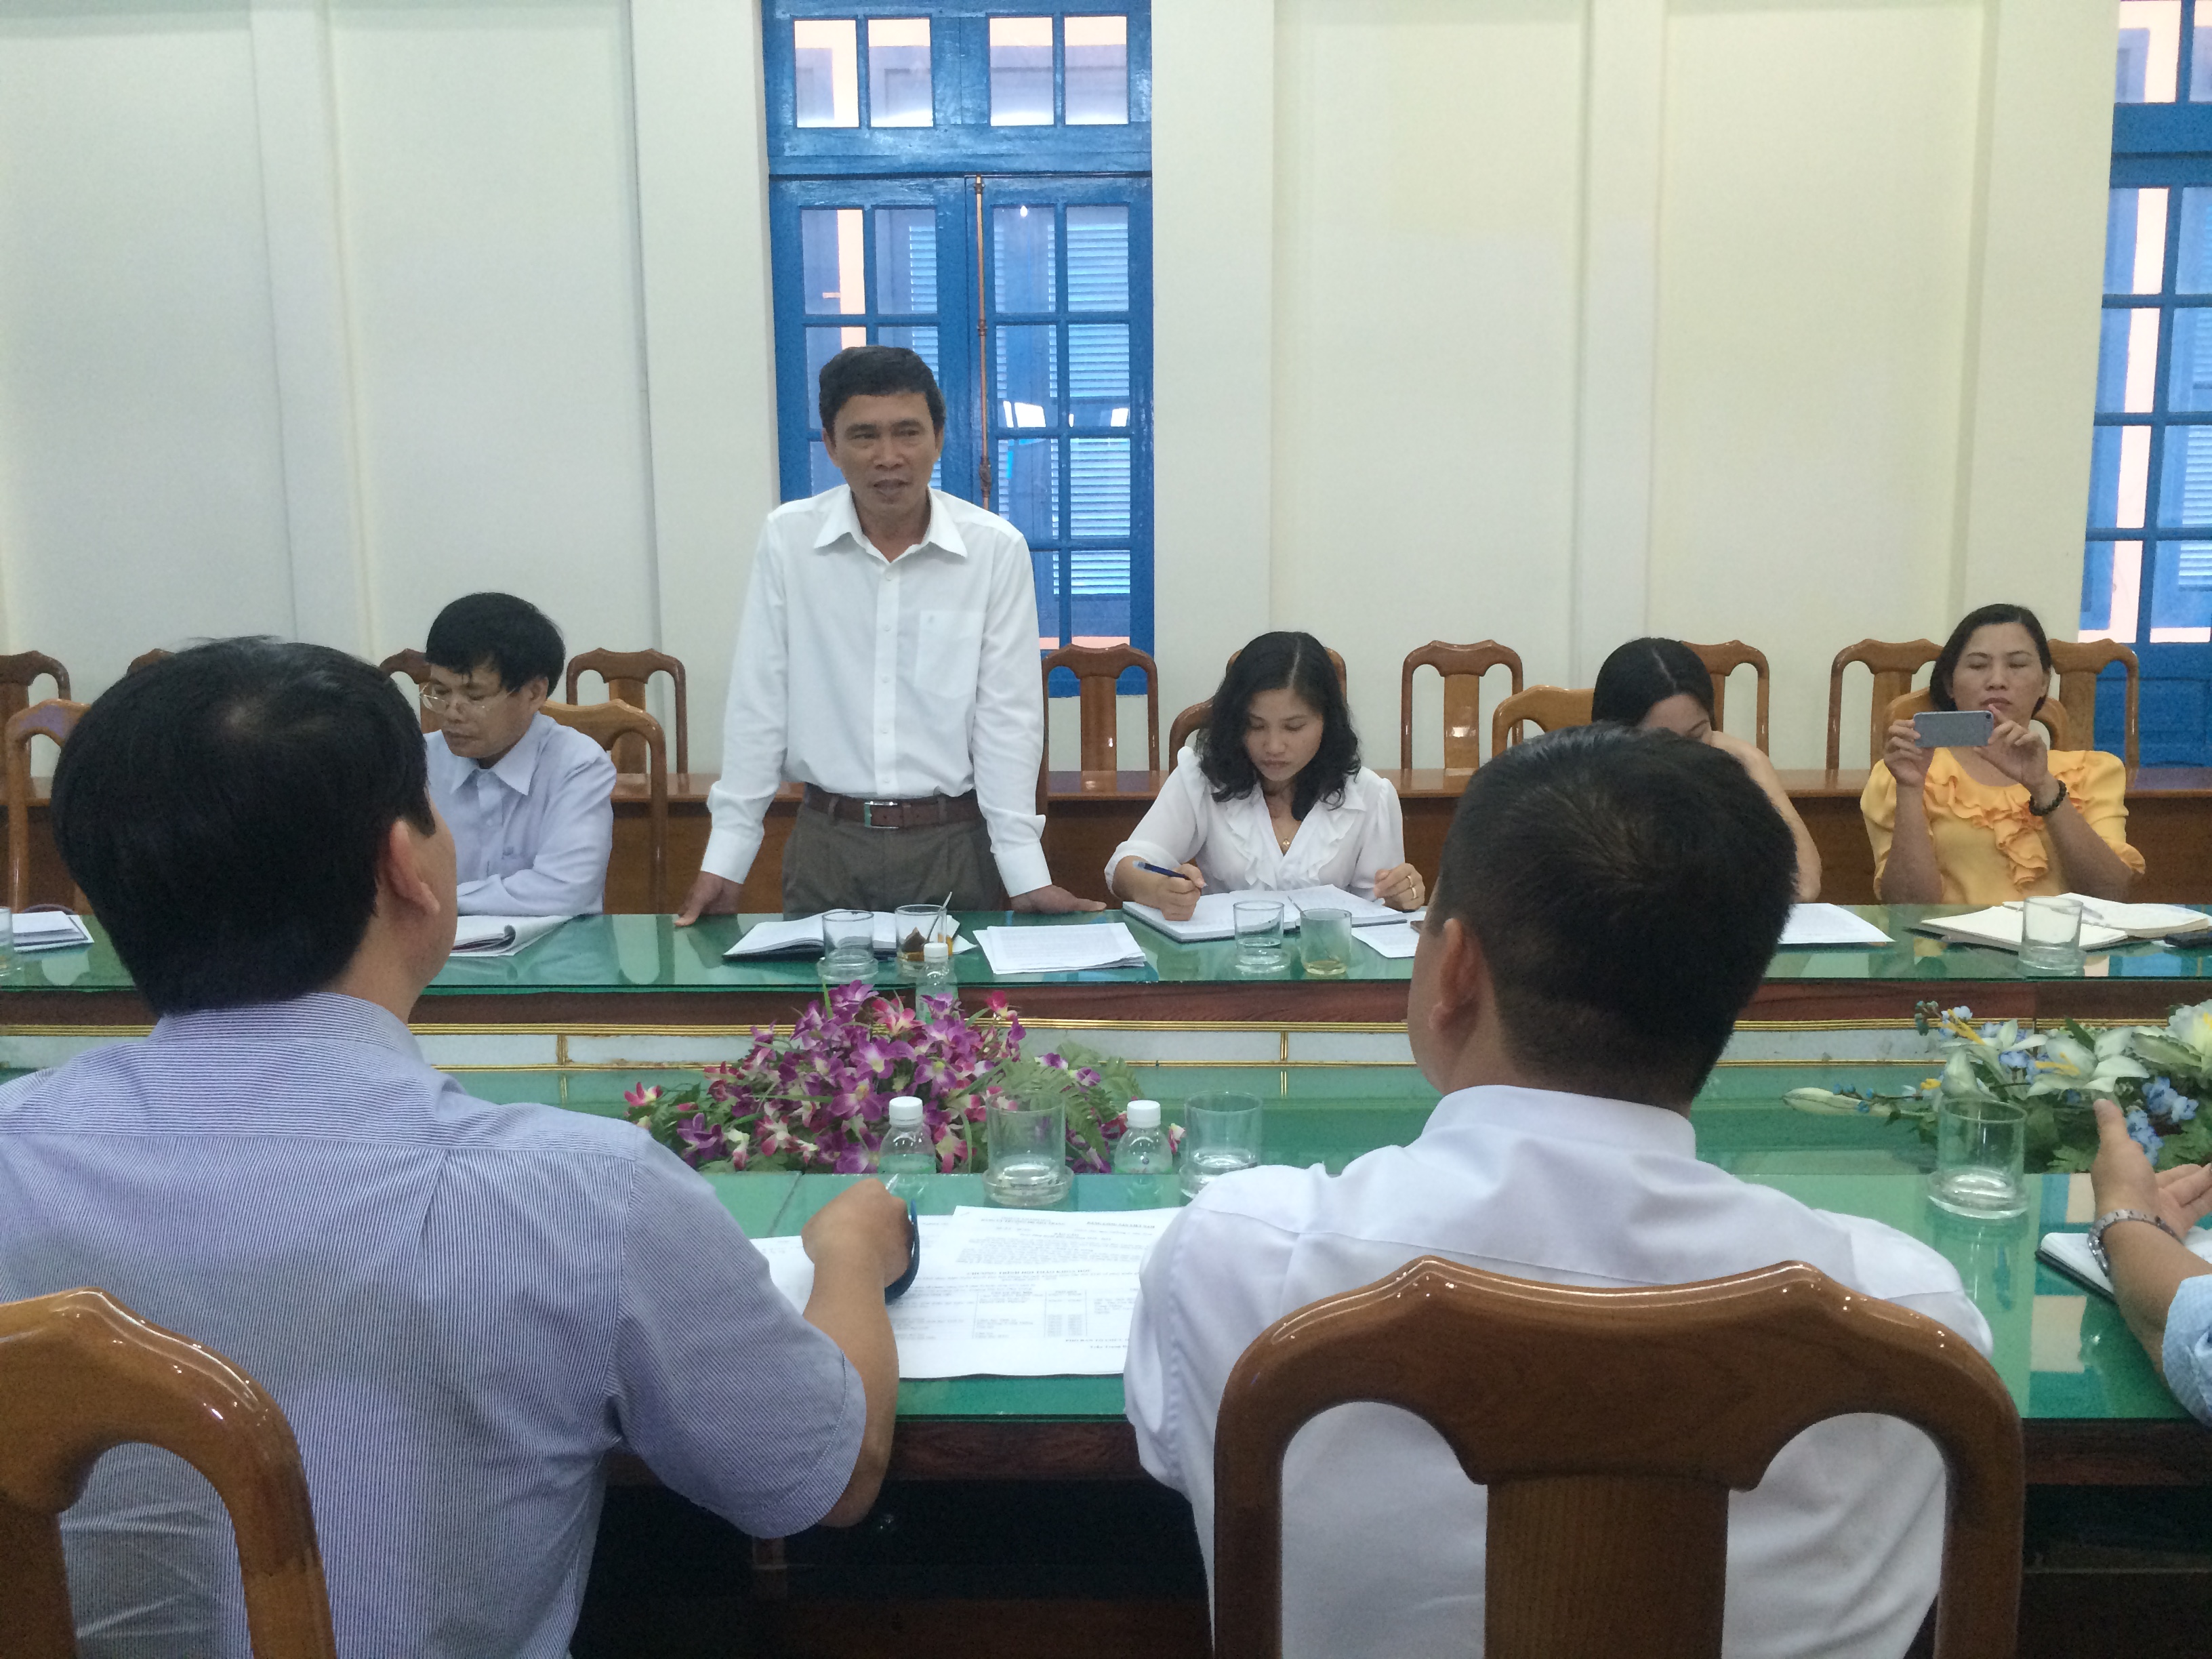 Ban Tuyên giáo Tỉnh ủy làm việc với Trường Đại học Nha Trang